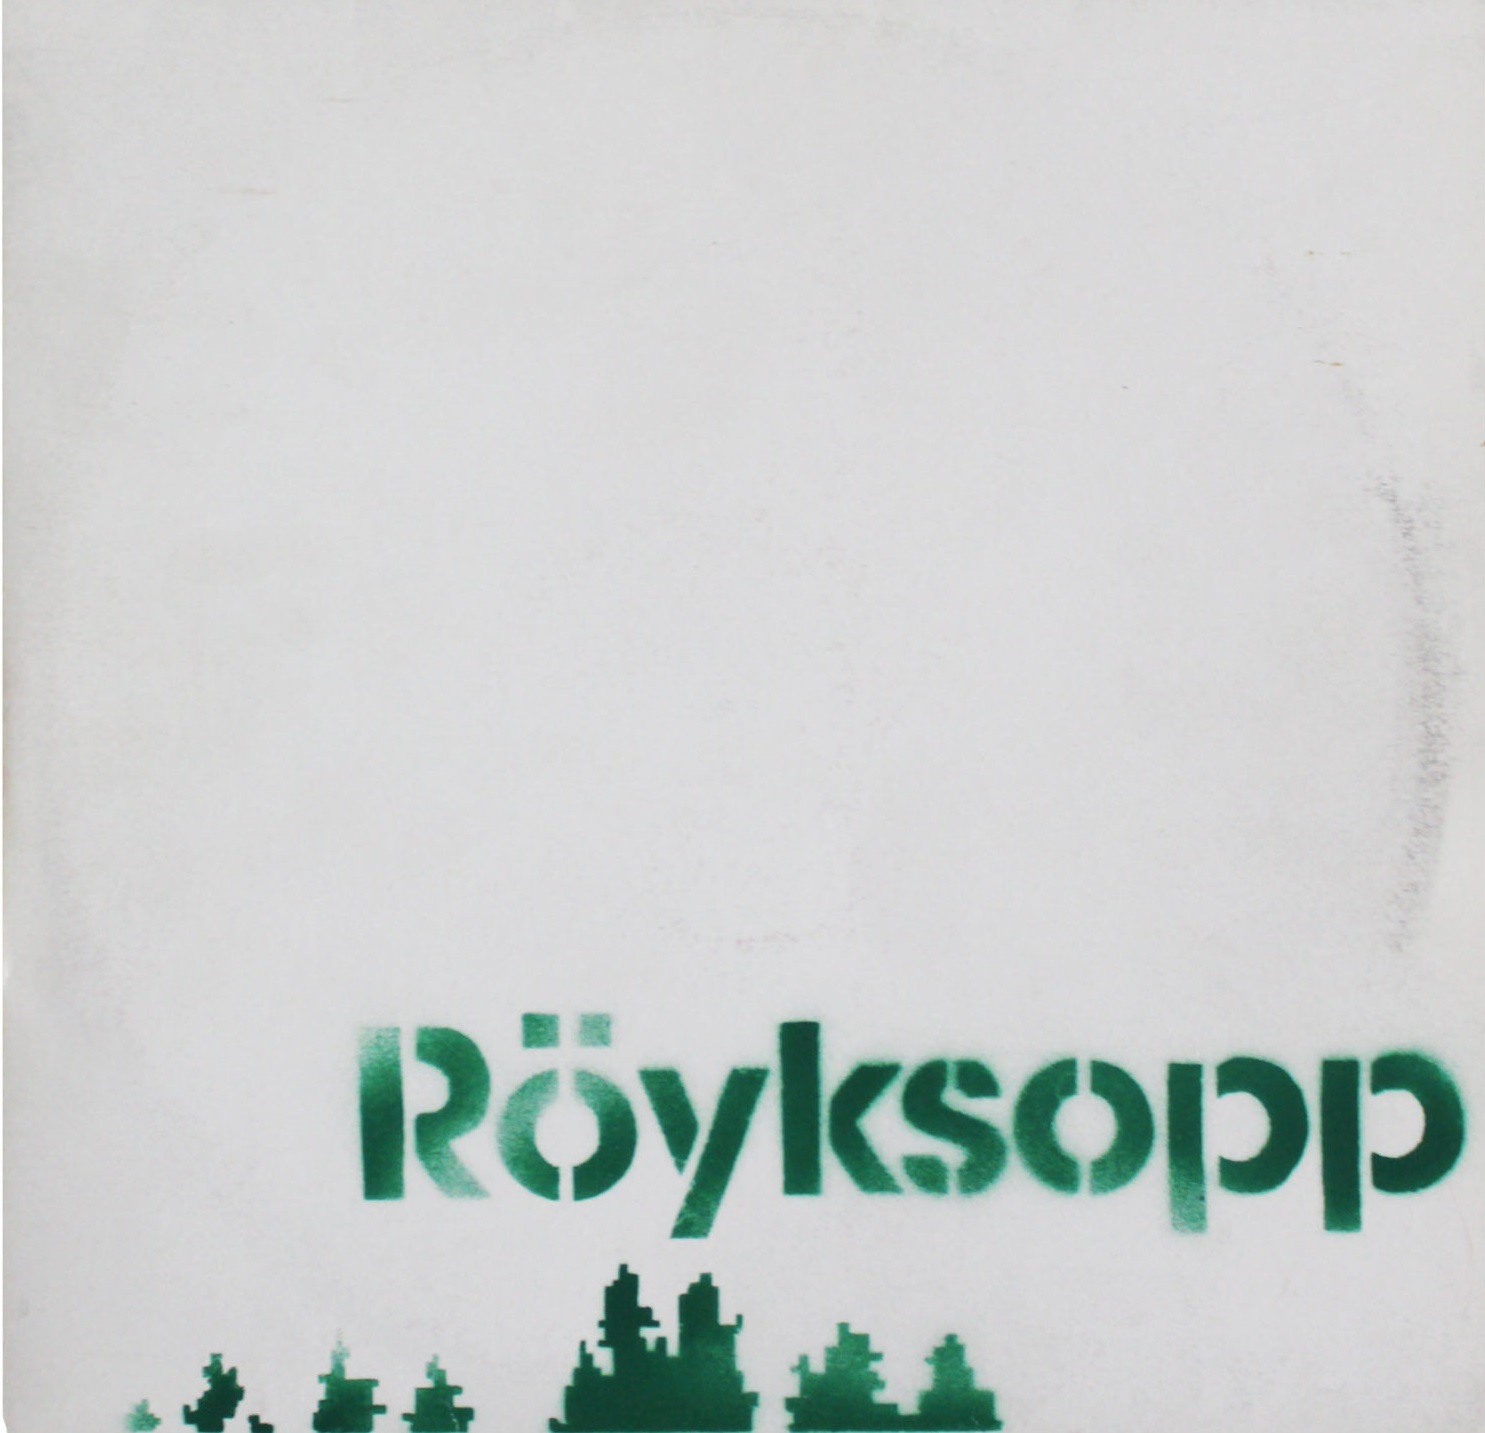 Copertina di Bansky per il disco di Royksopp